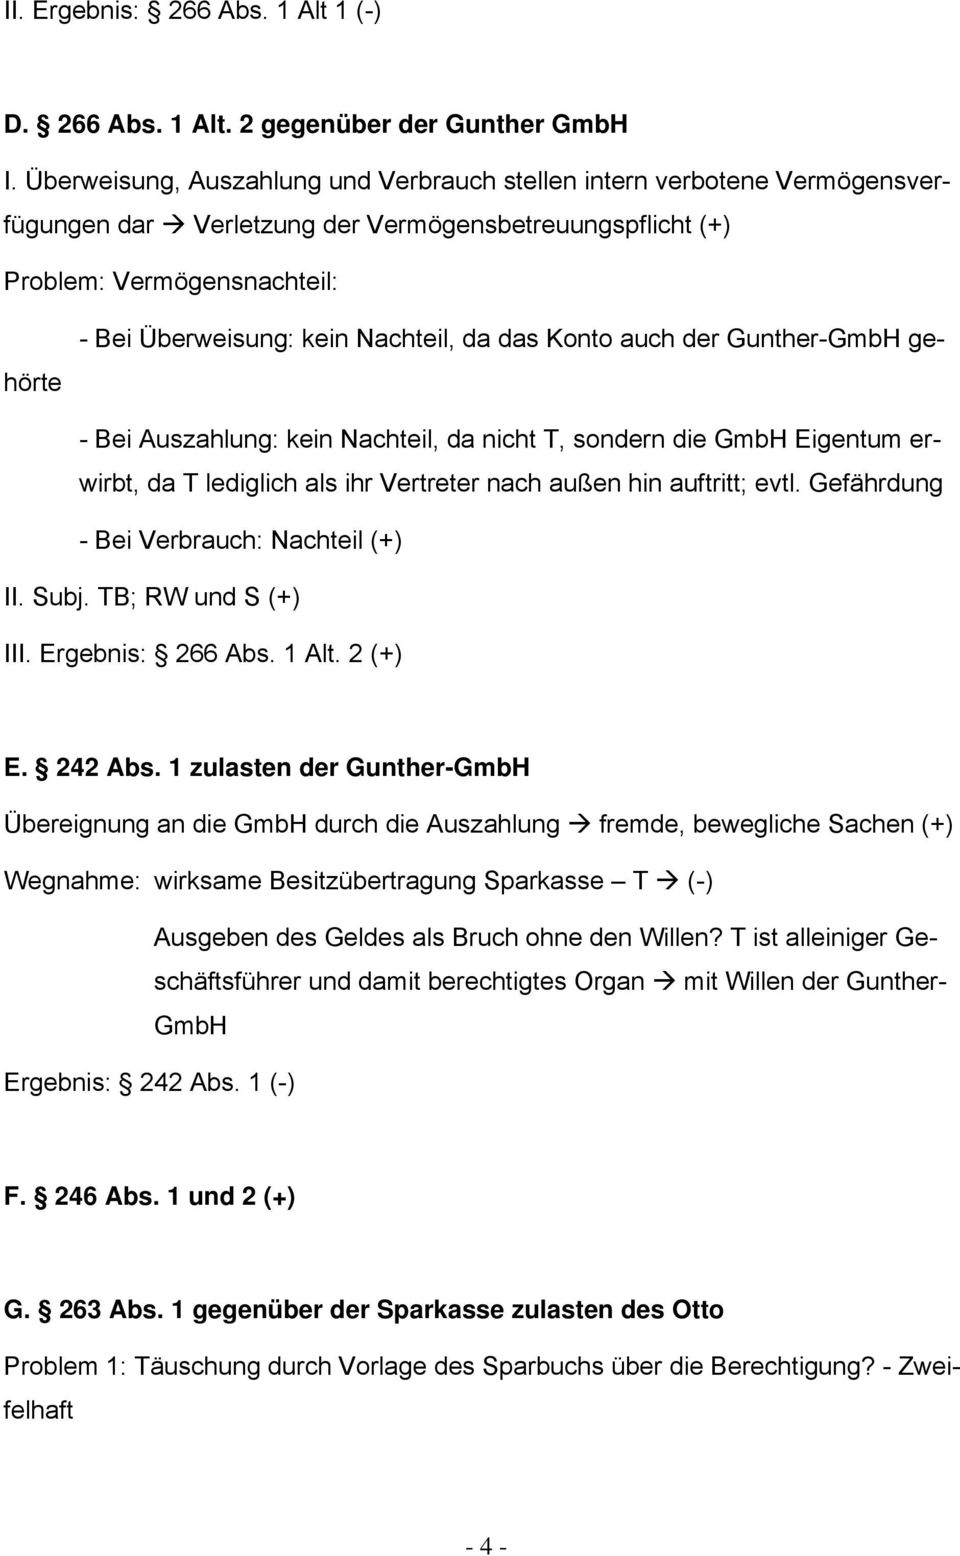 das Konto auch der Gunther-GmbH gehörte - Bei Auszahlung: kein Nachteil, da nicht T, sondern die GmbH Eigentum erwirbt, da T lediglich als ihr Vertreter nach außen hin auftritt; evtl.